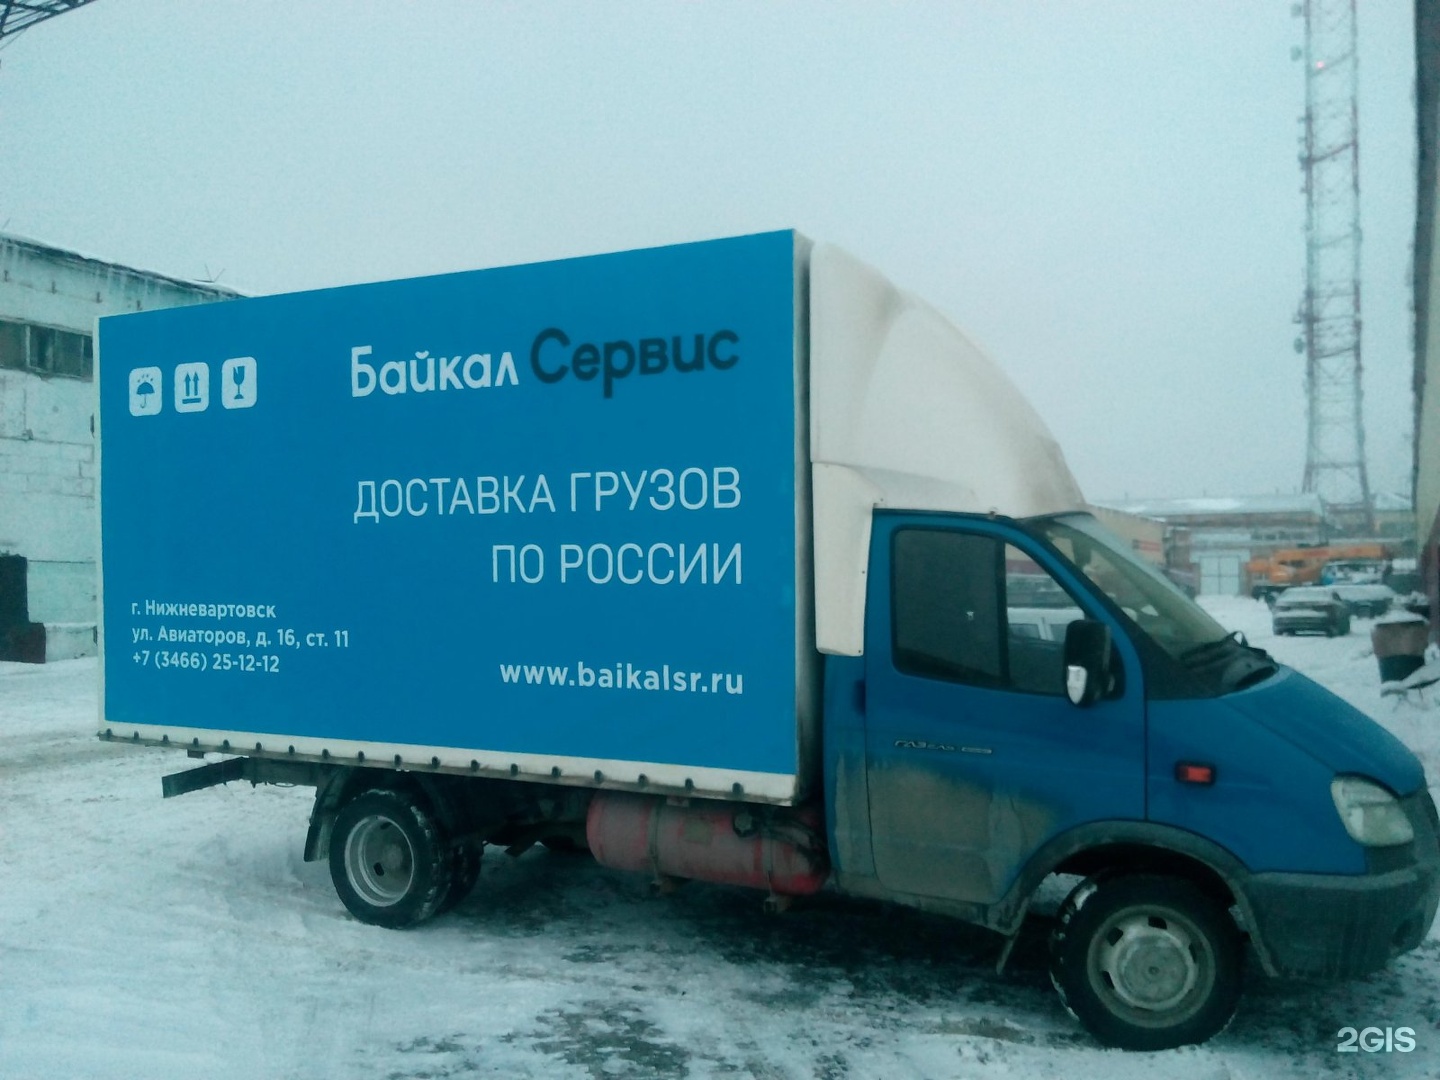 Байкал транспортная компания